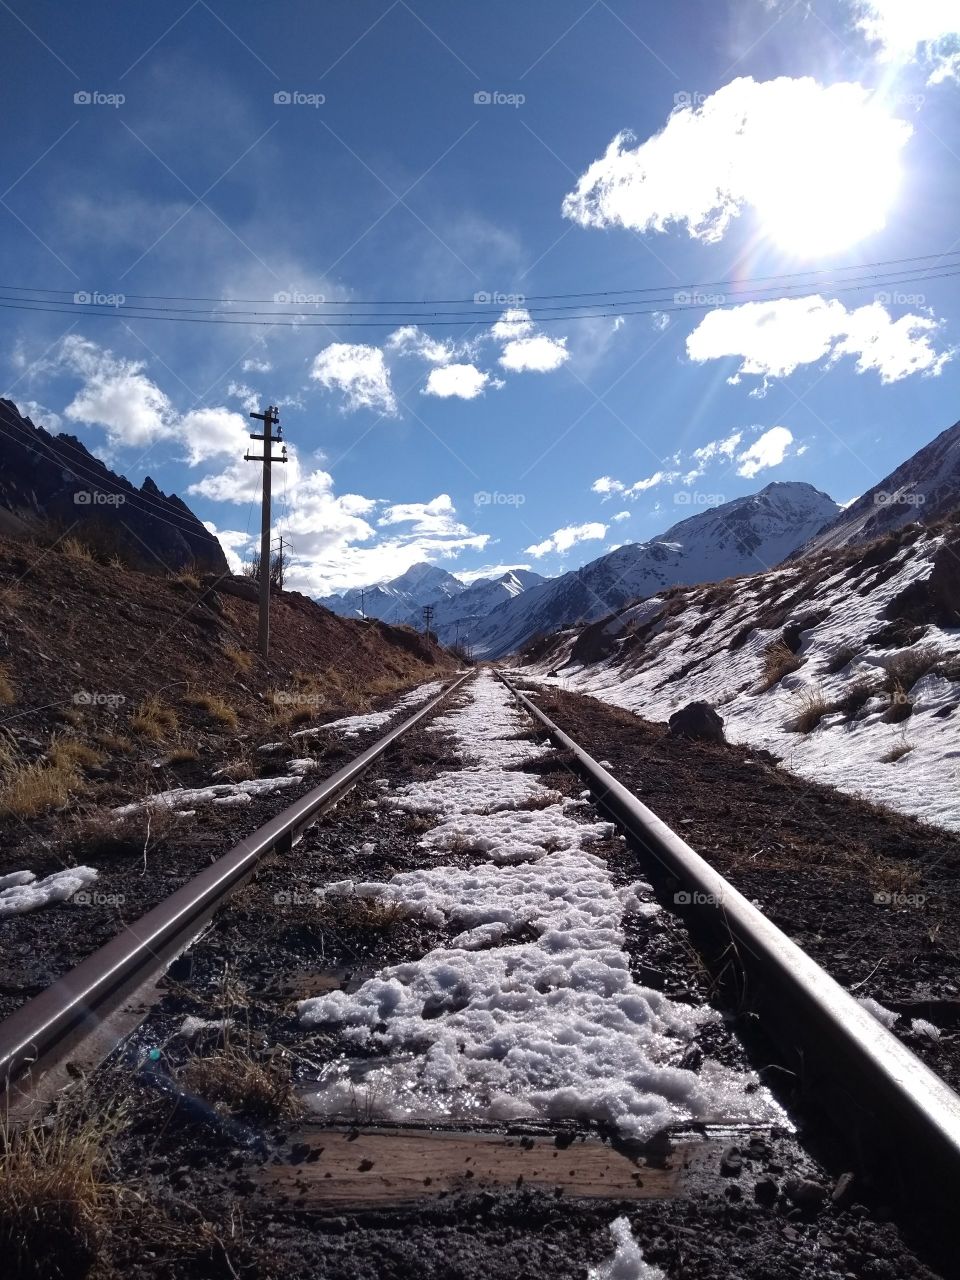 Acero, Madera y Nieve

Viejas vías del tren trasandino, cerca de penitentes en la provincia de Mendoza, Argentina